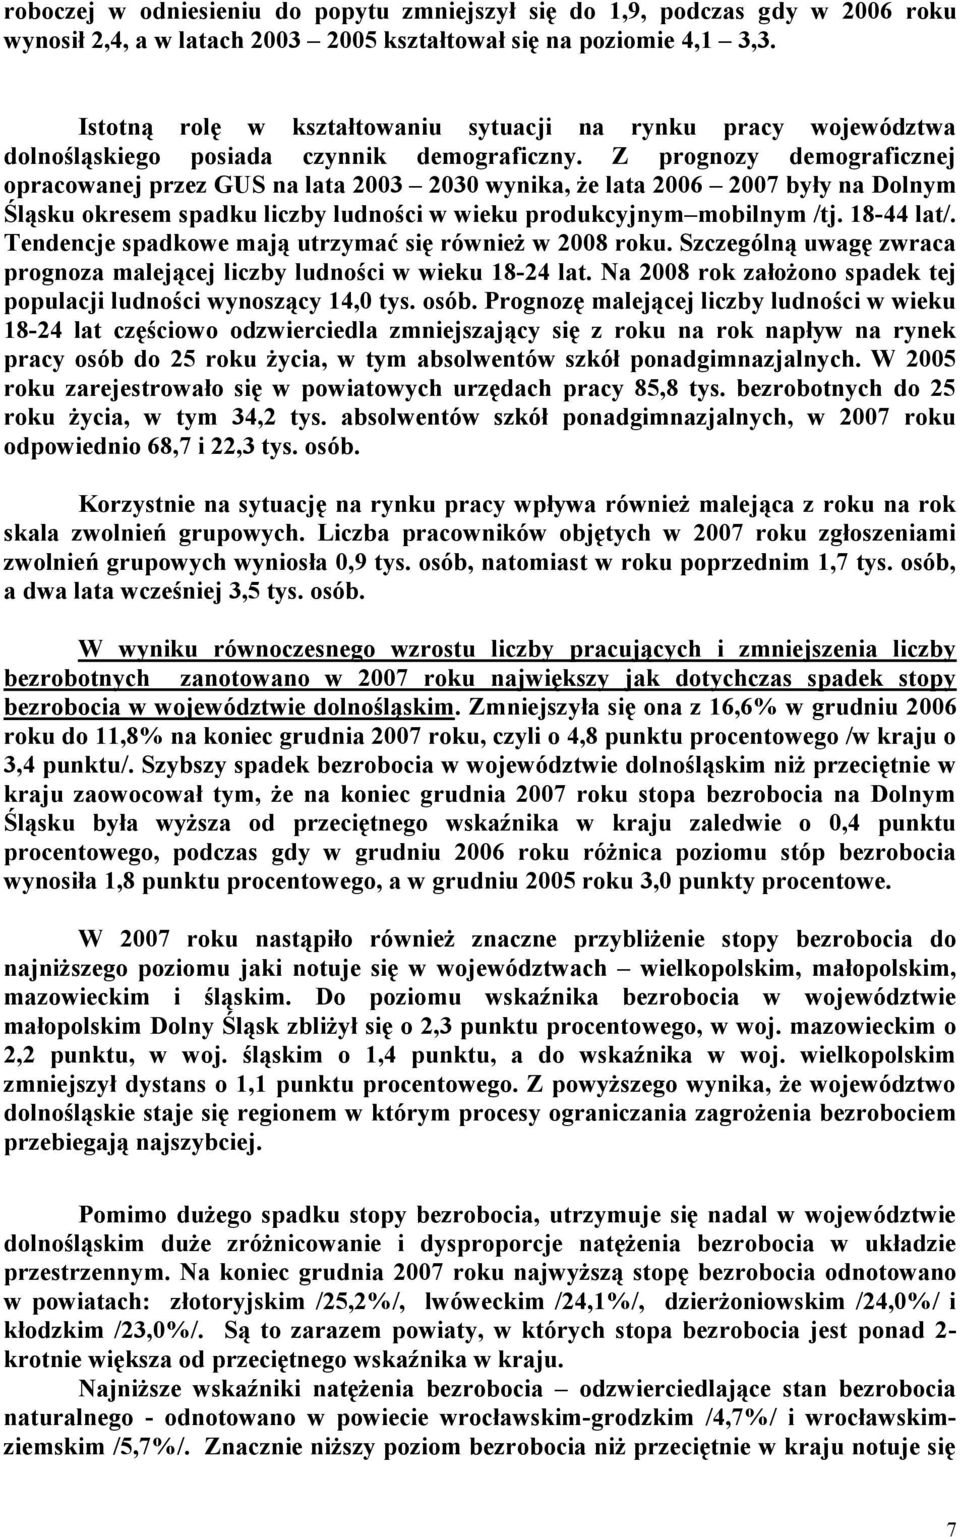 Z prognozy demograficznej opracowanej przez GUS na lata 2003 2030 wynika, że lata 2006 2007 były na Dolnym Śląsku okresem spadku liczby ludności w wieku produkcyjnym mobilnym /tj. 18-44 lat/.